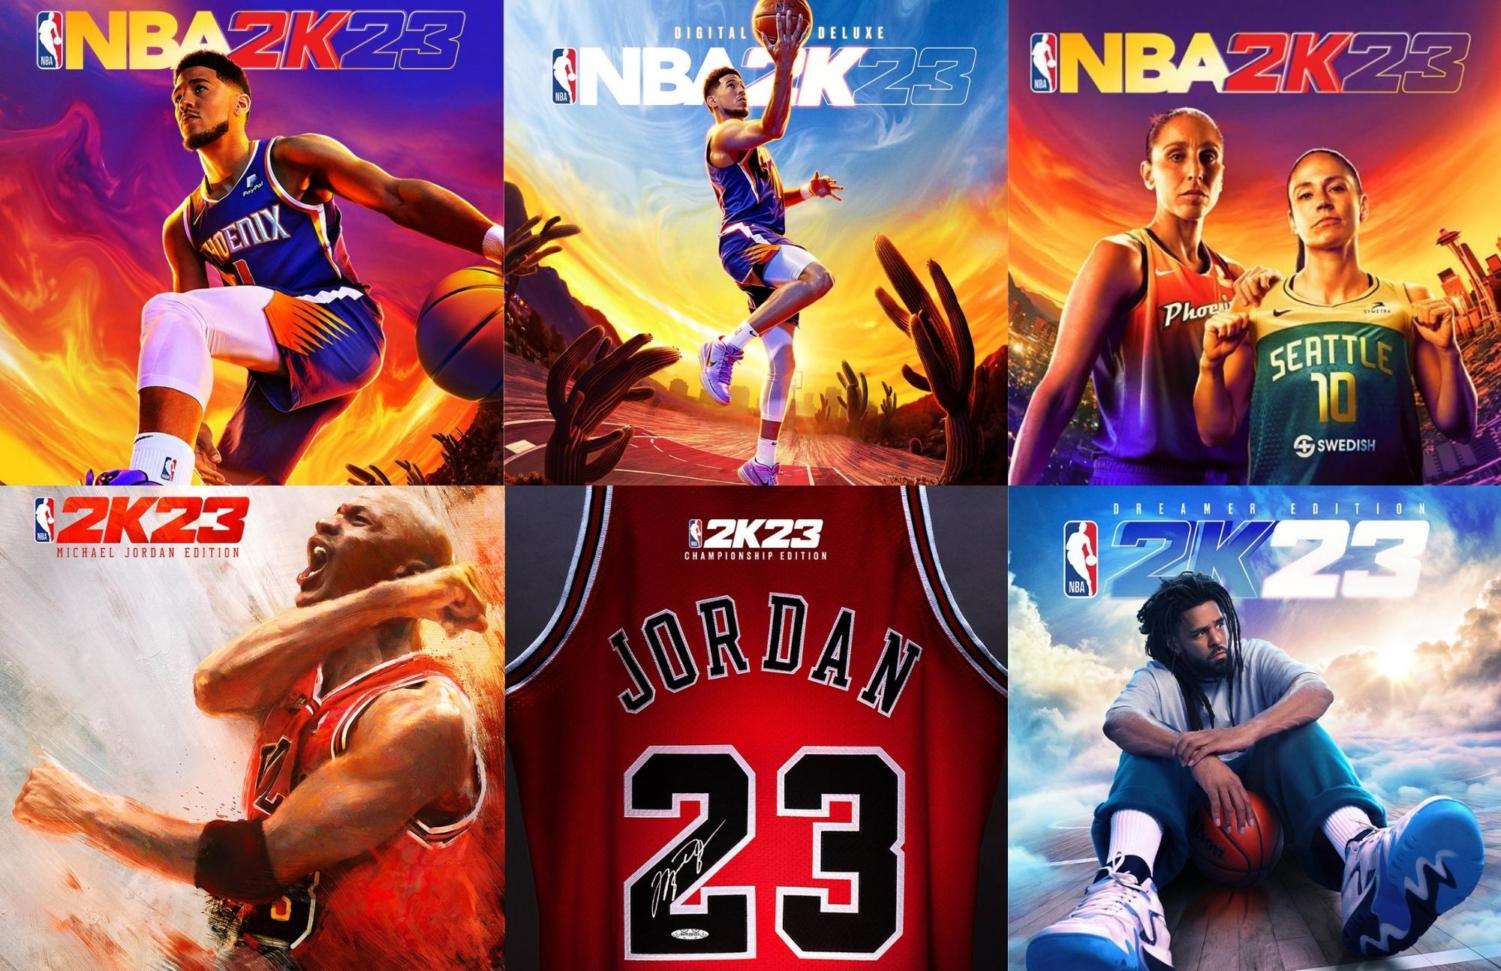 NBA 2K23 Championship Edition PlayStation 4